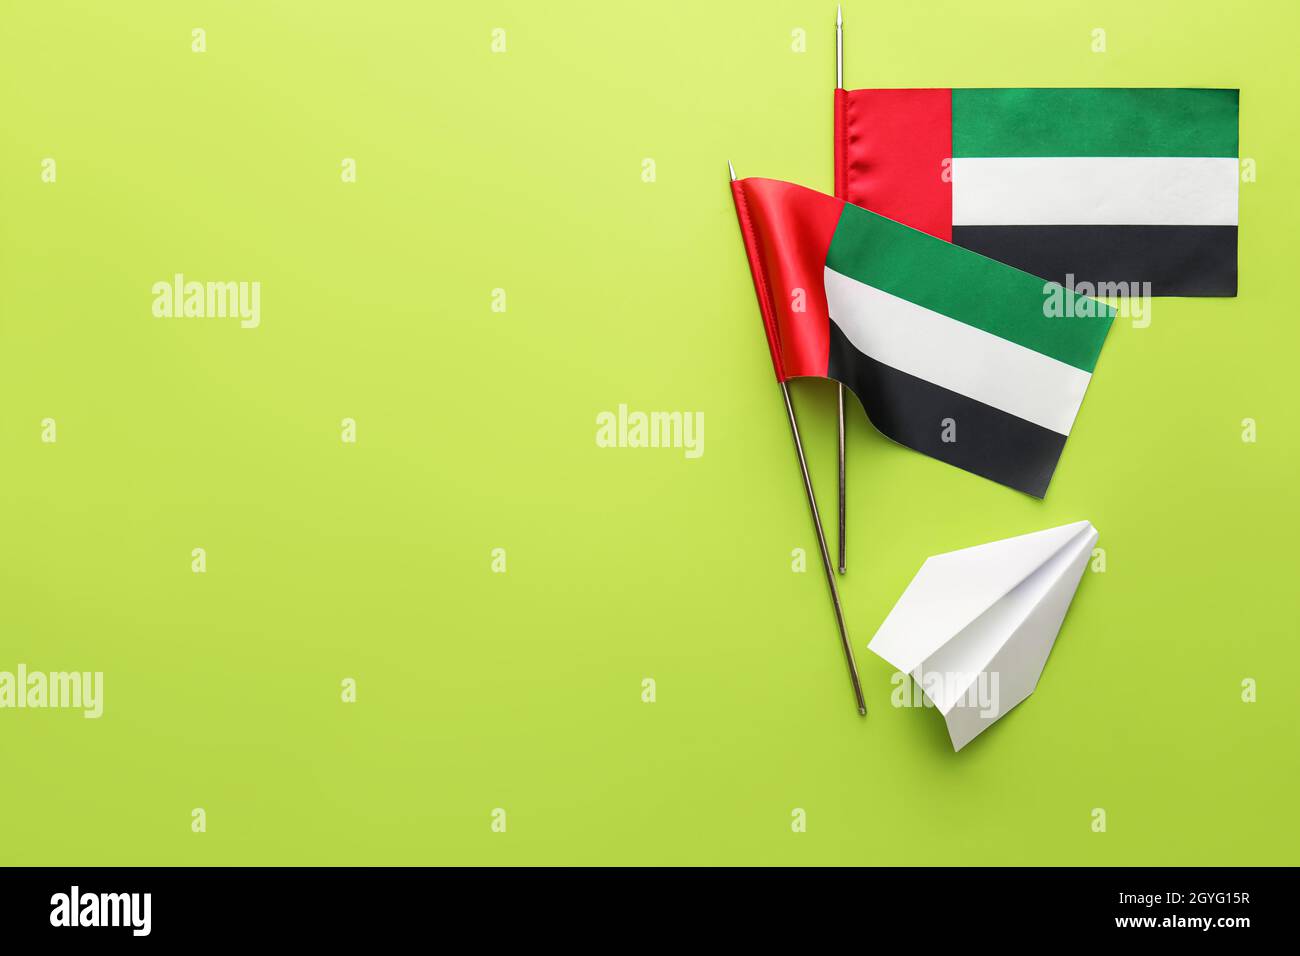 Cách tuyệt vời để thể hiện tình yêu với quốc gia UAE chính là vẽ hình máy bay giấy trên lá cờ. Bức hình đầy sáng tạo sẽ làm bạn bật cười và muốn tìm hiểu thêm về đẹp của nền văn hóa Trung Đông.